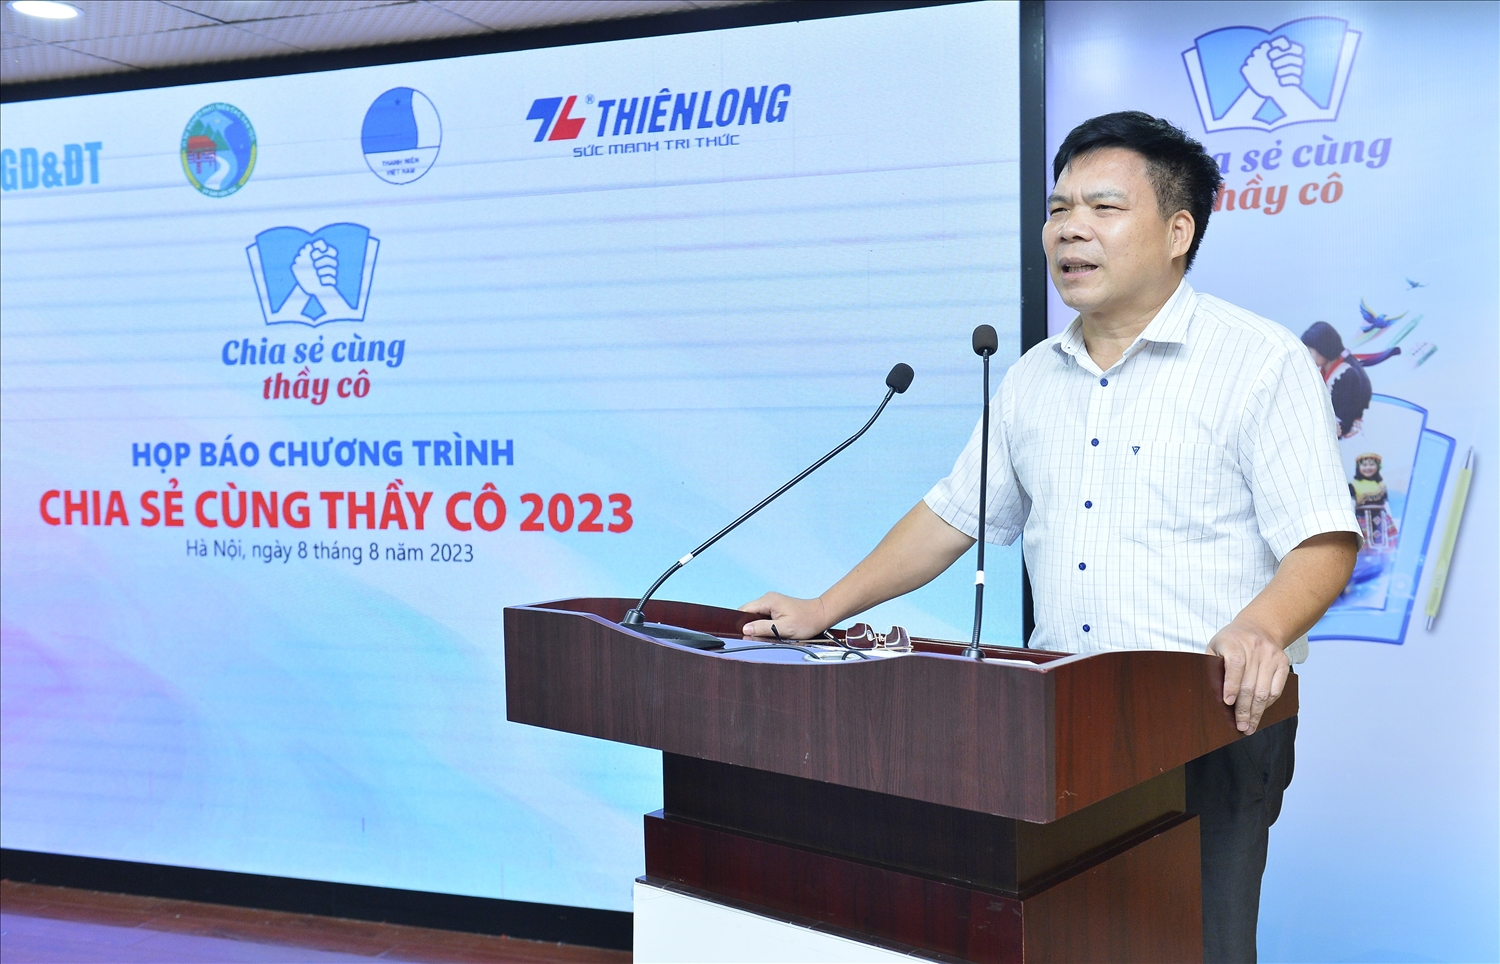 Phó Vụ trưởng Vụ tuyên truyền (Ủy ban Dân tộc) Đinh Xuân Thắng phát biểu tại Chương trình